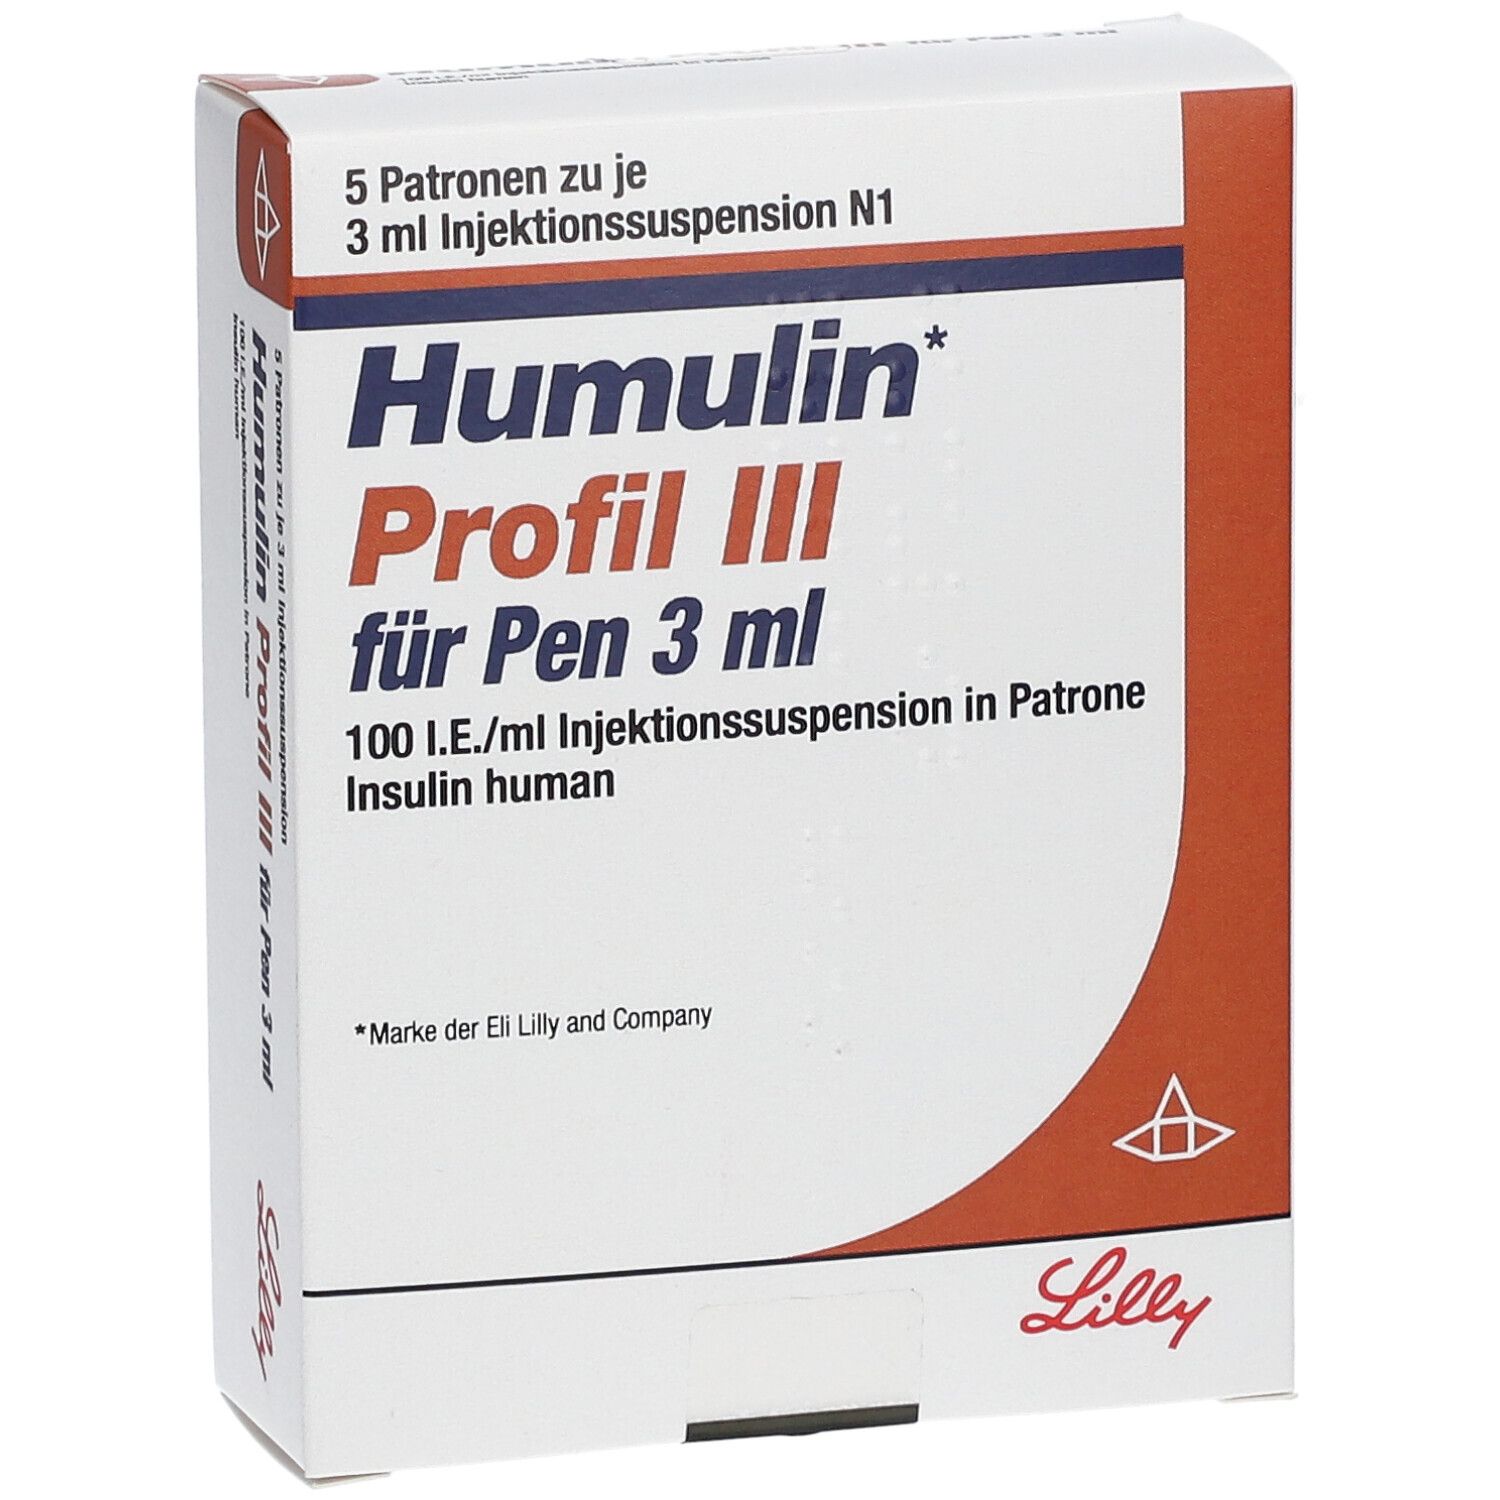 Humulin Profil III